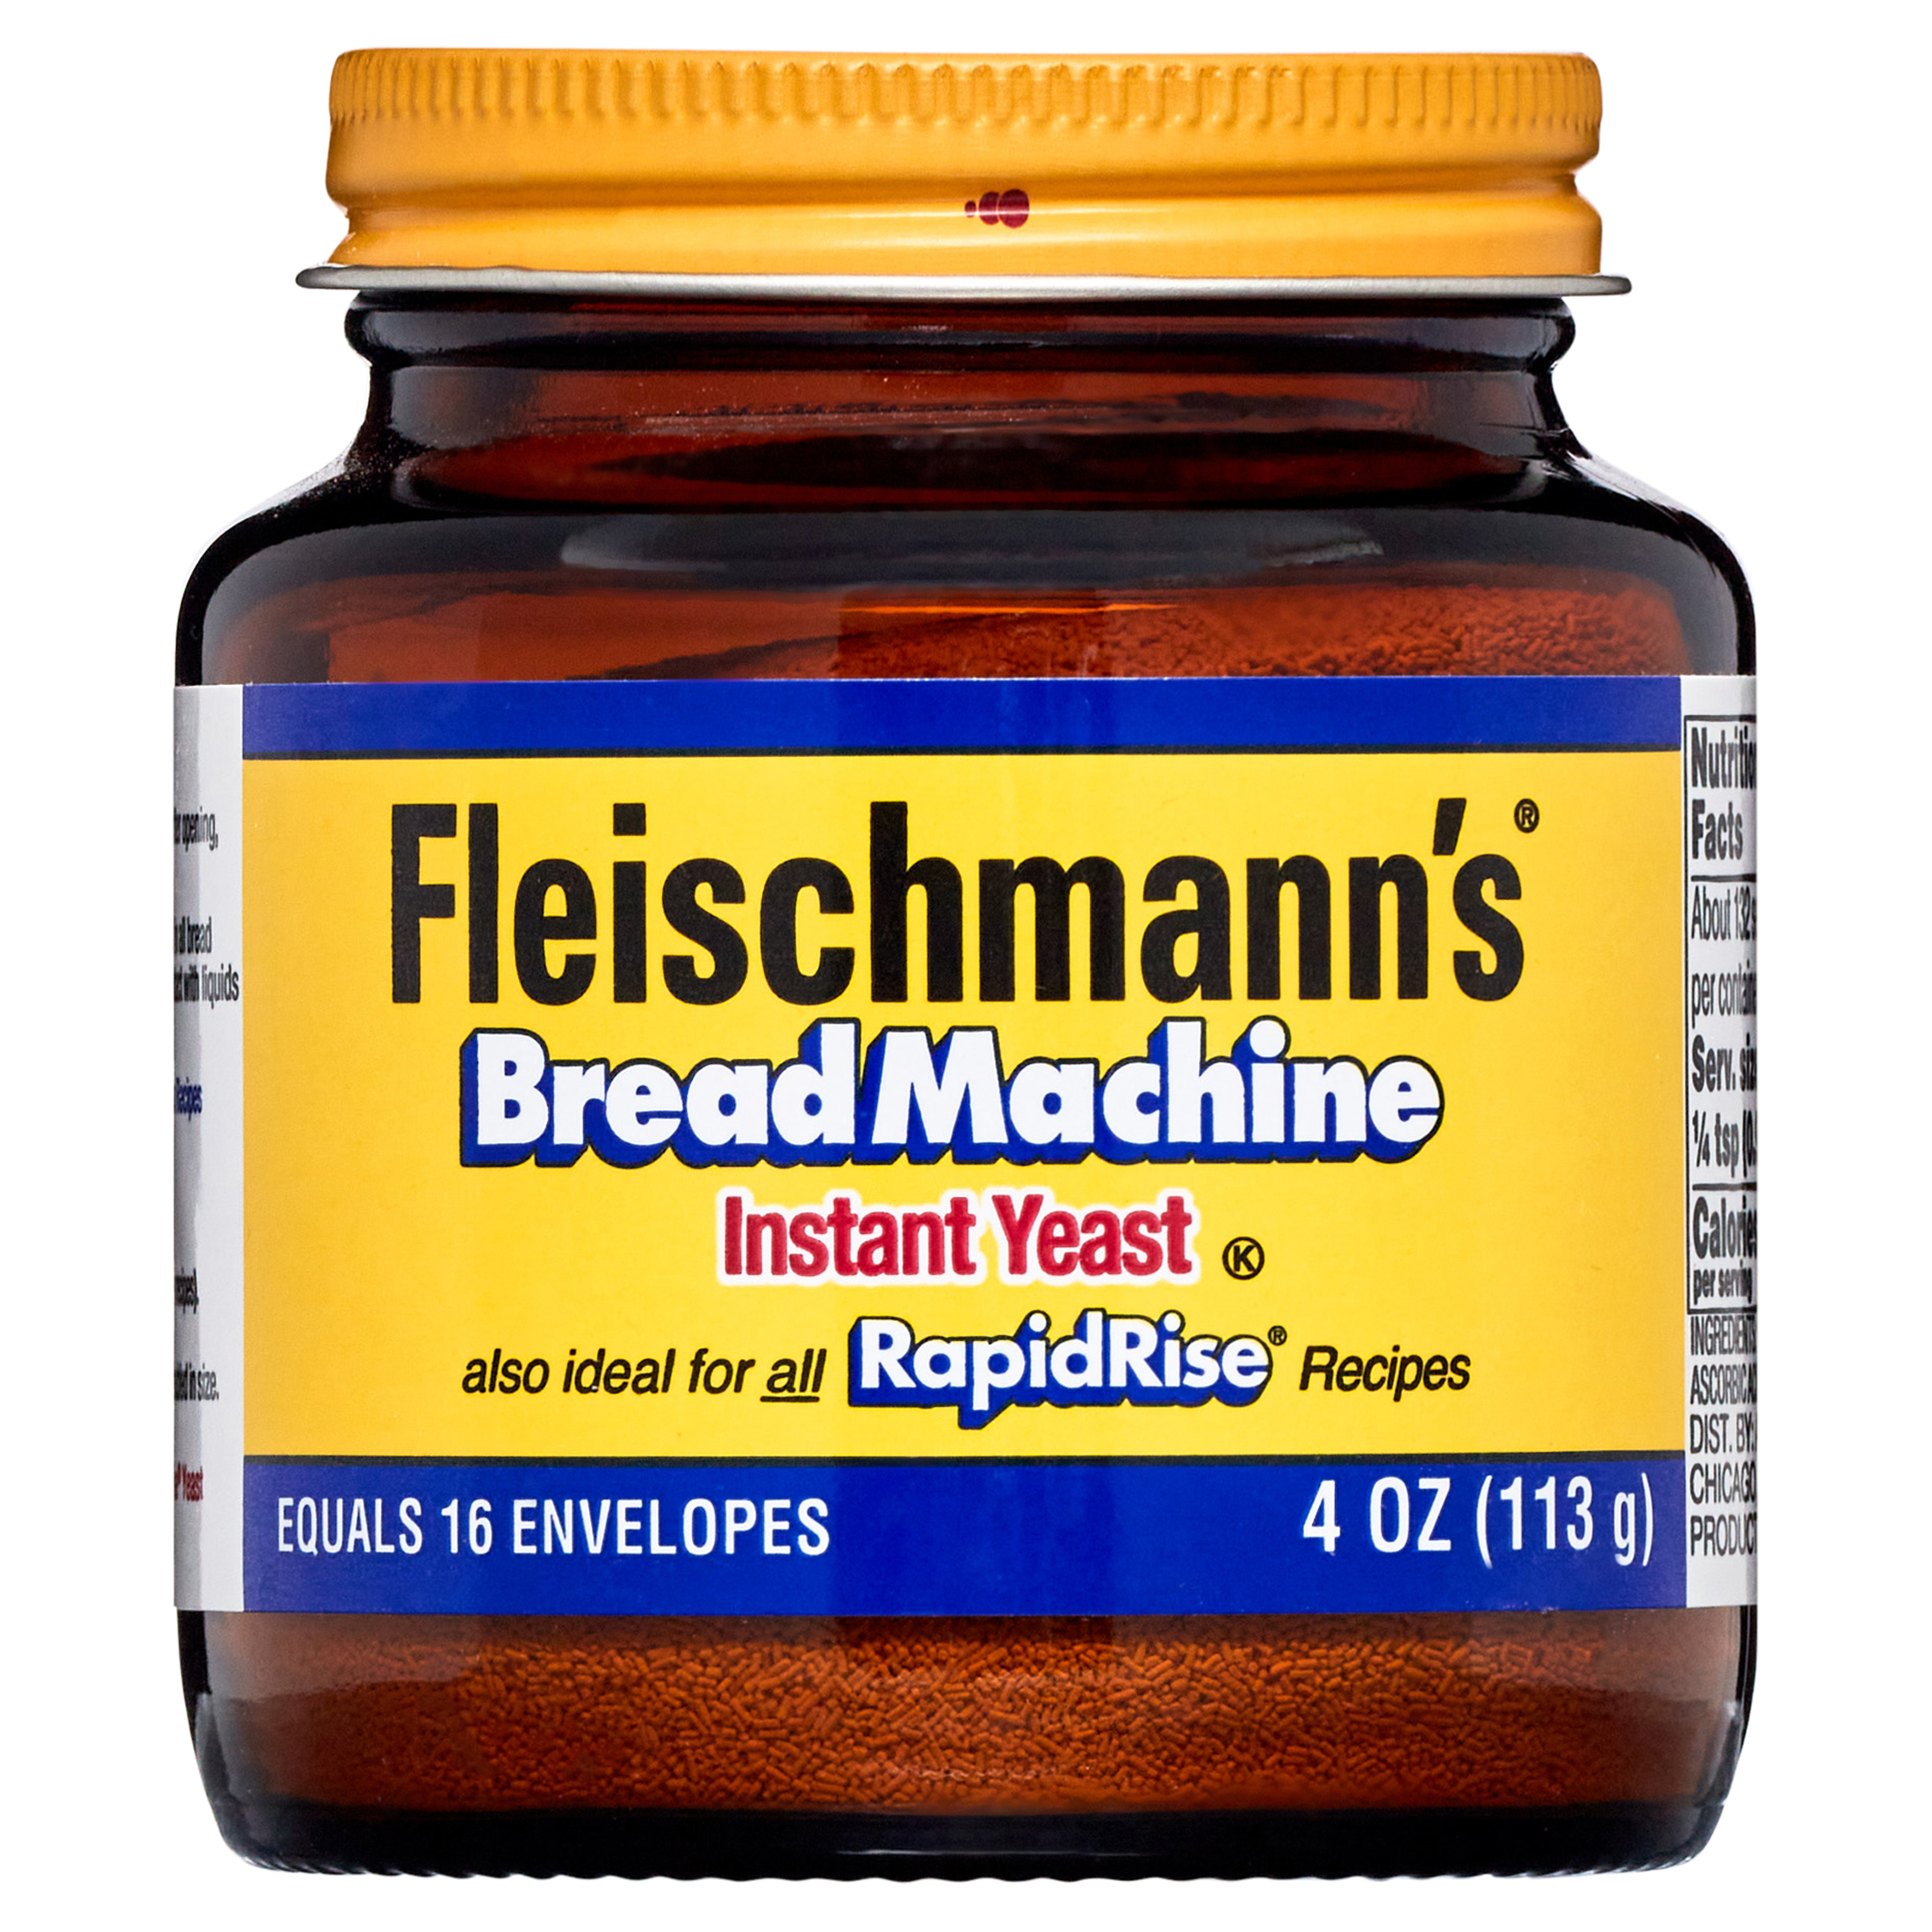 Fleischmann's Classic Bread Machine Yeast, 4 oz - image 1 of 5